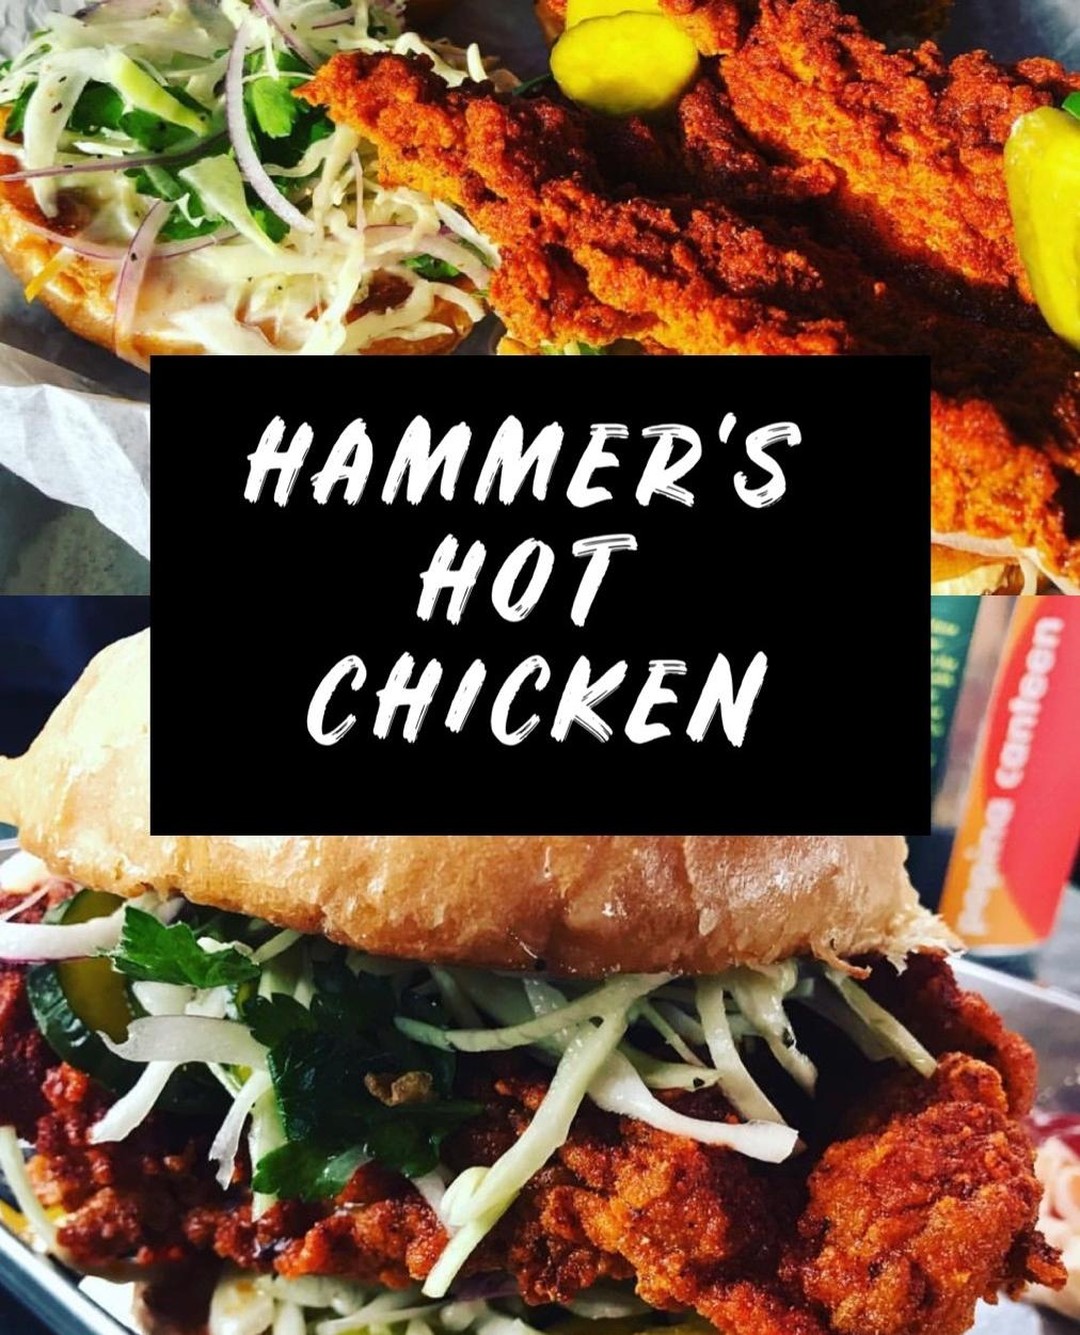 Hammers-hot-chicken